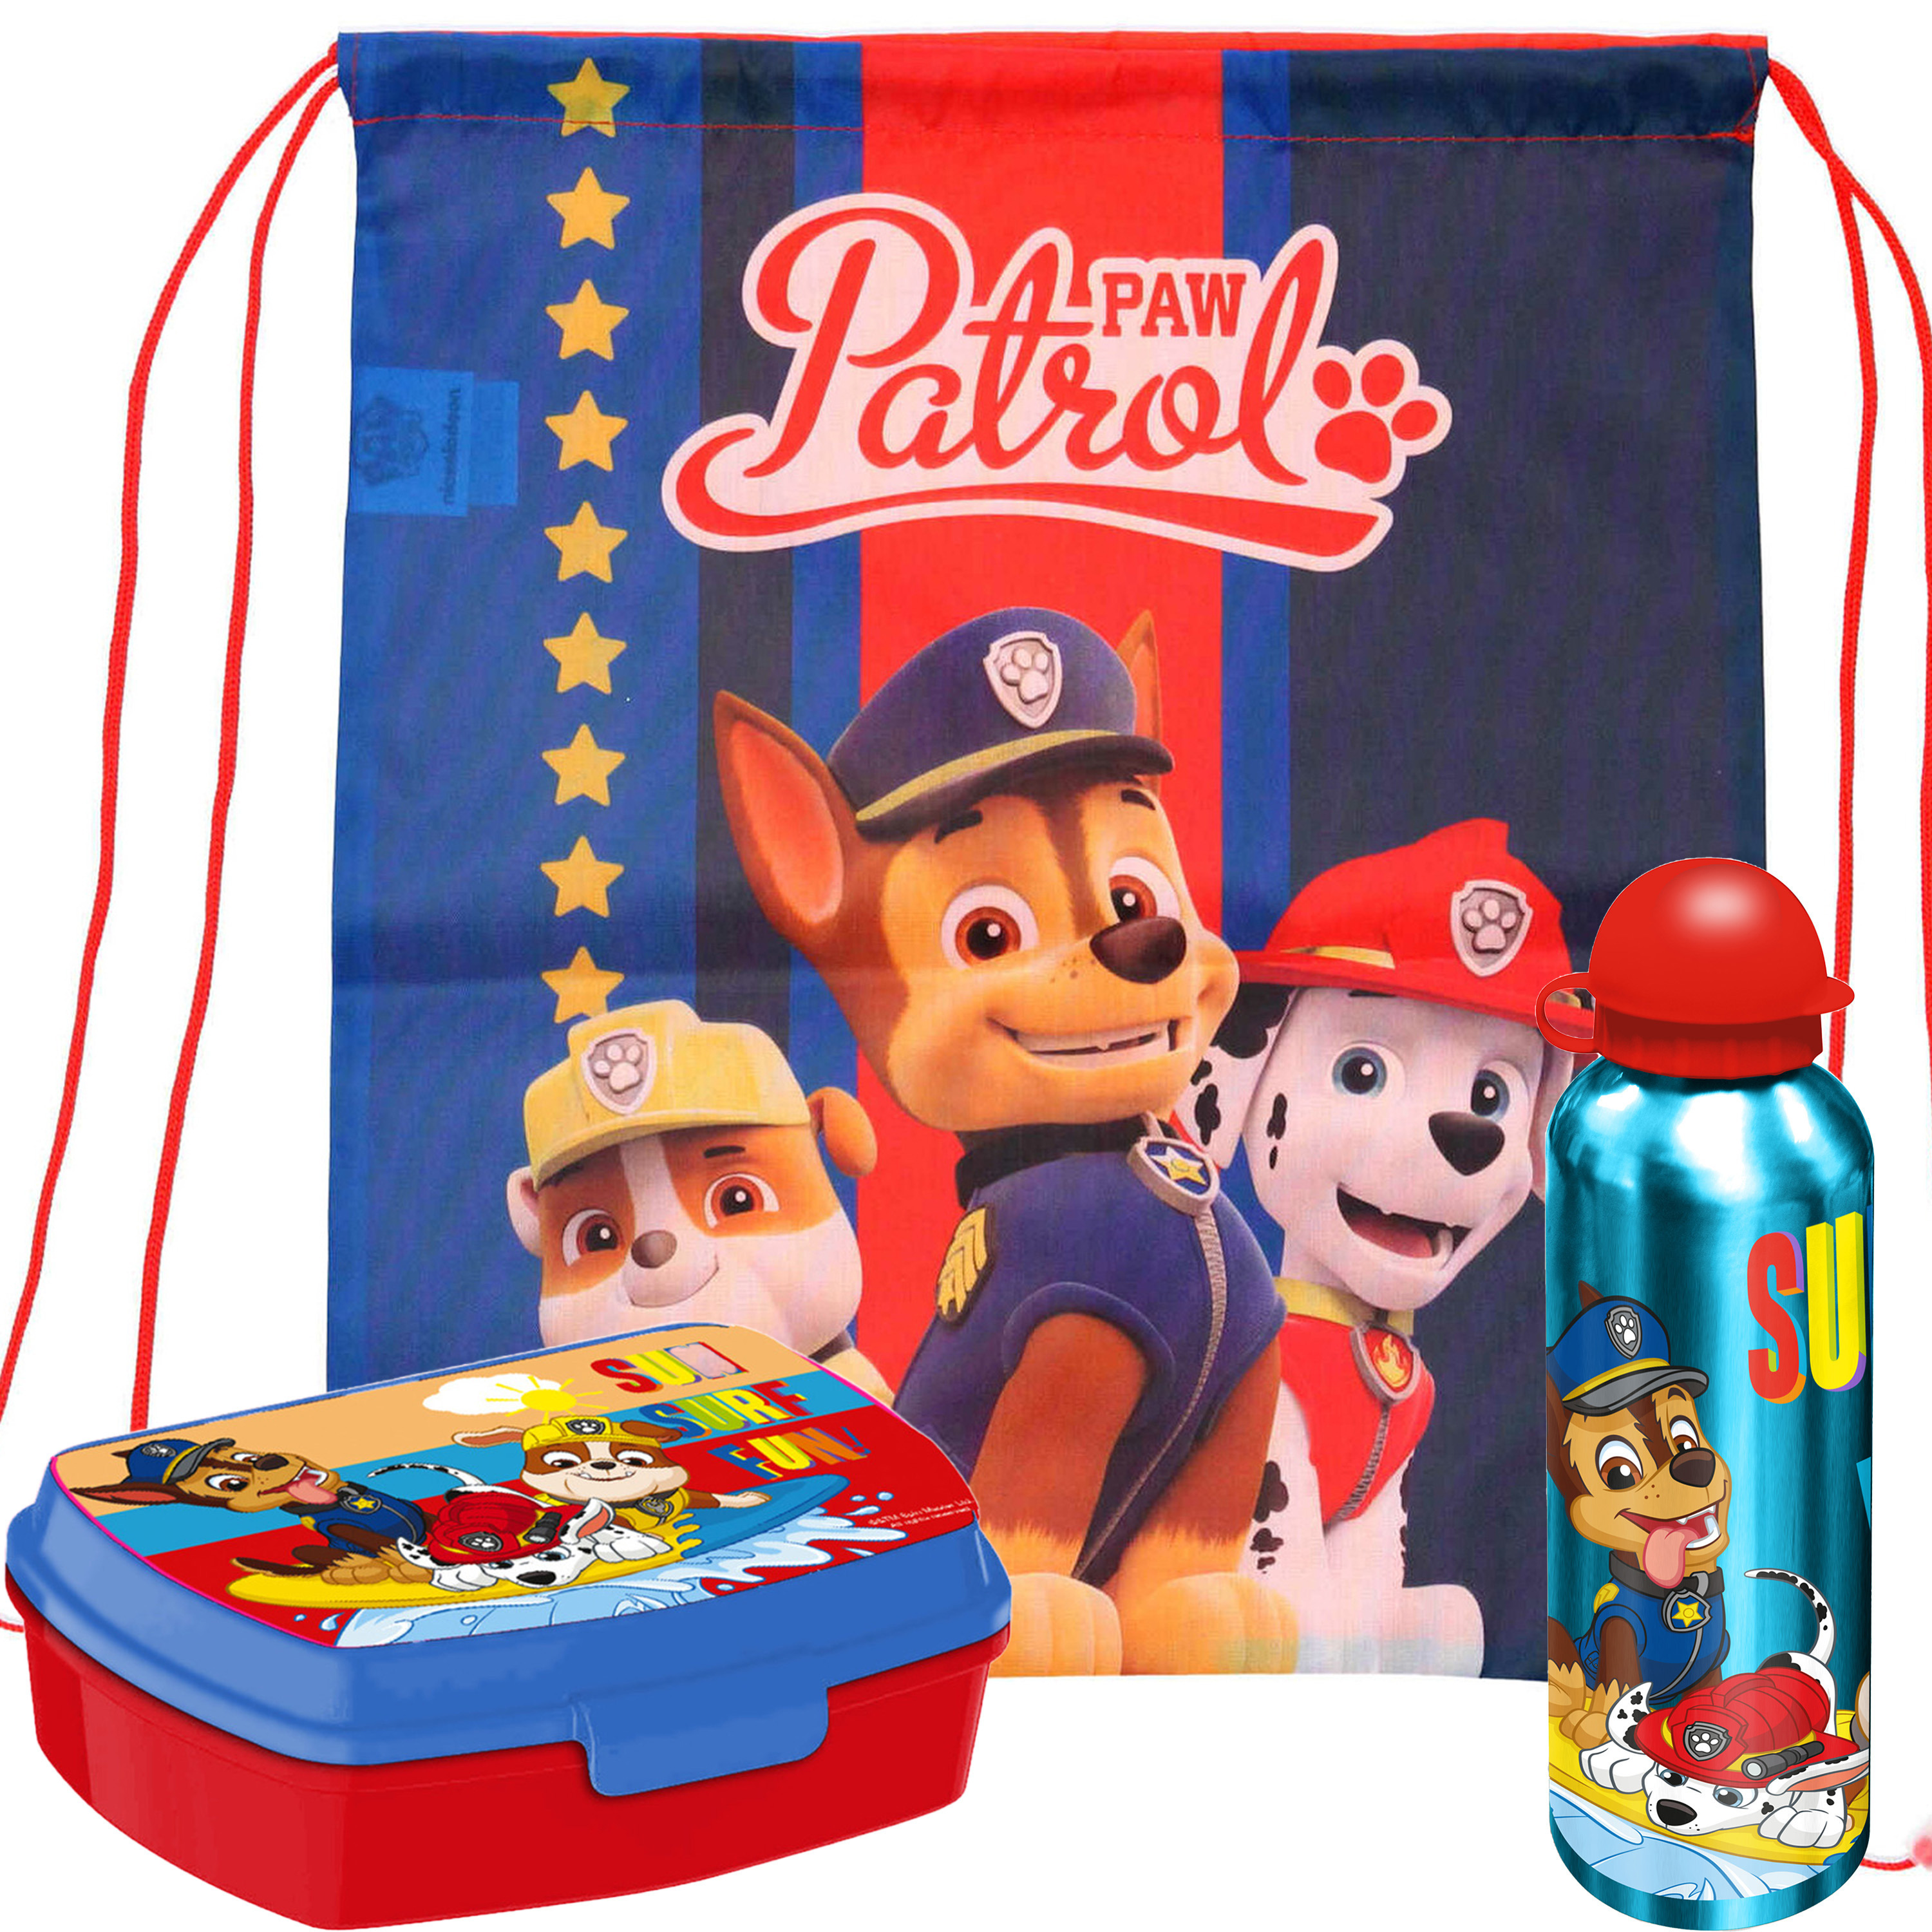 Paw Patrol lunchbox set voor kinderen - 3-delig - rood - aluminium - incl. gymtas/schooltas